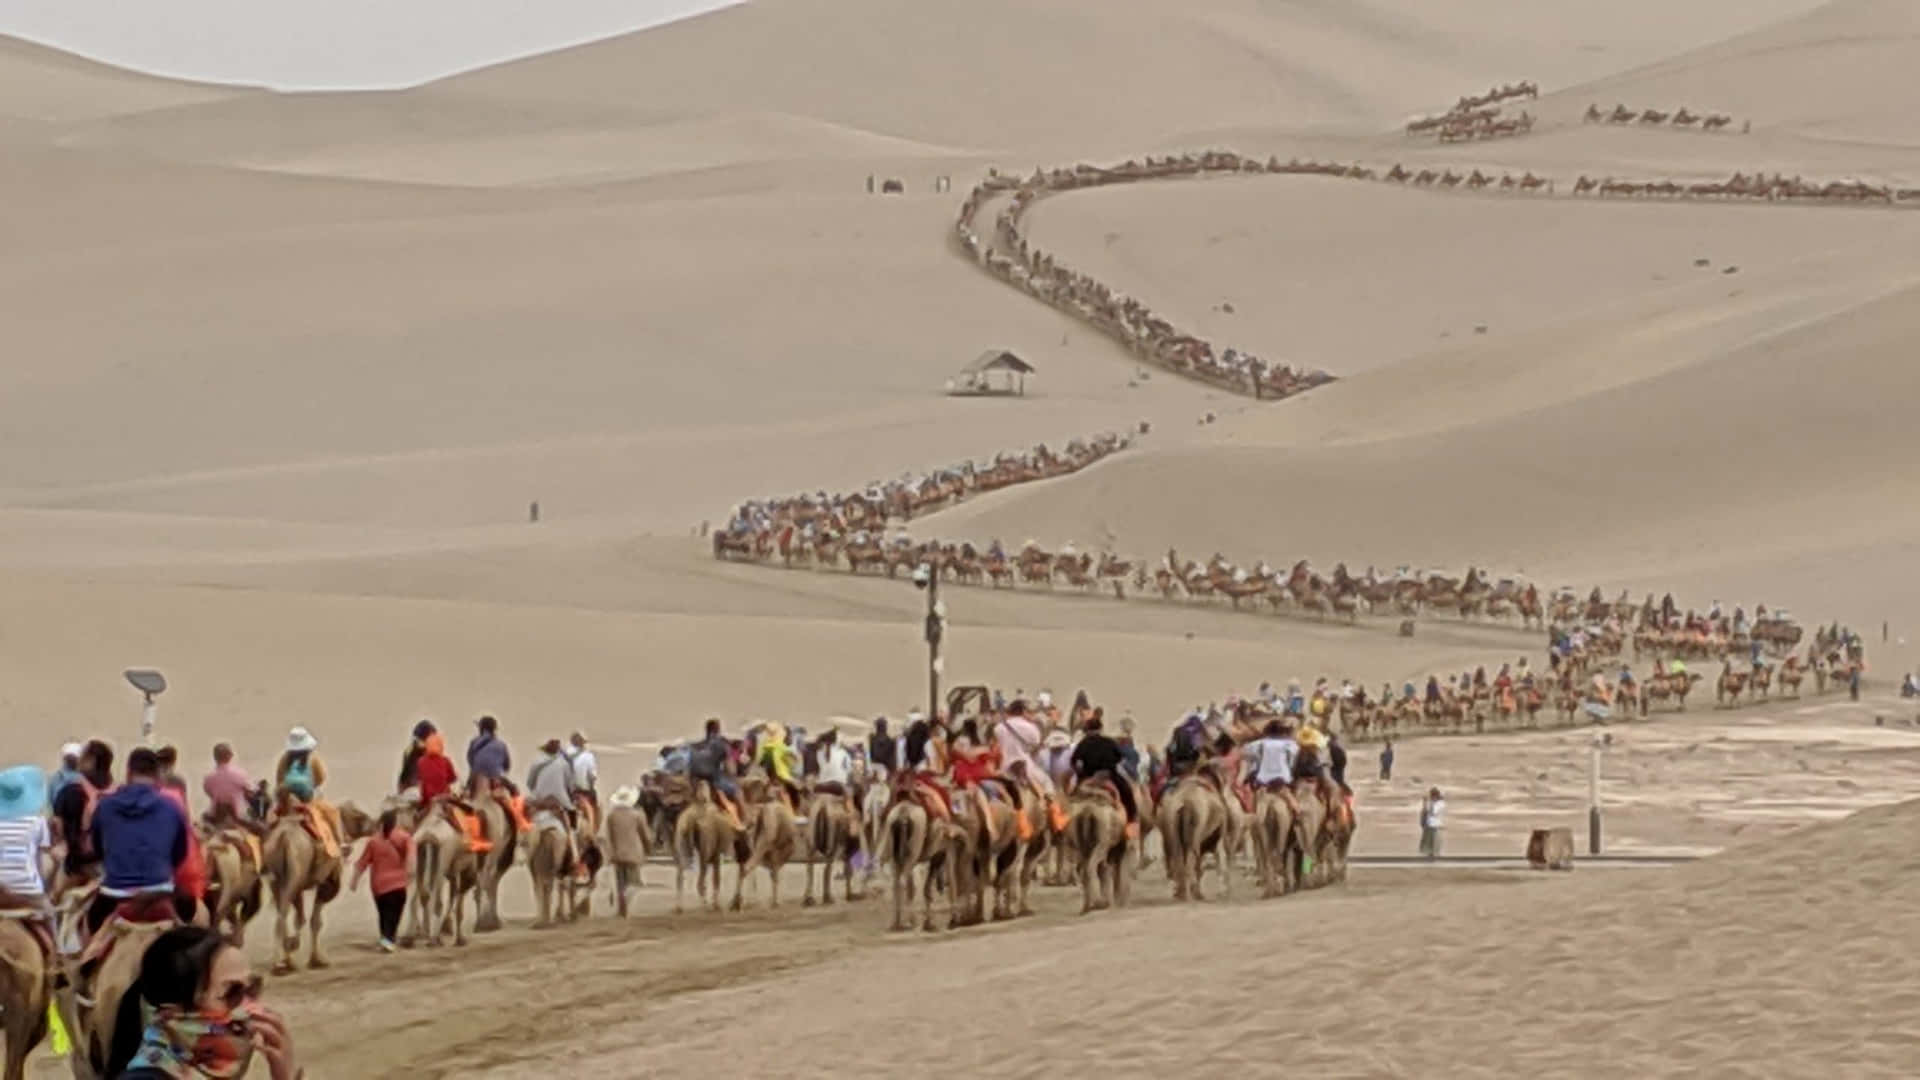 Einegruppe Von Menschen, Die Auf Kamelen Durch Die Wüste Reiten